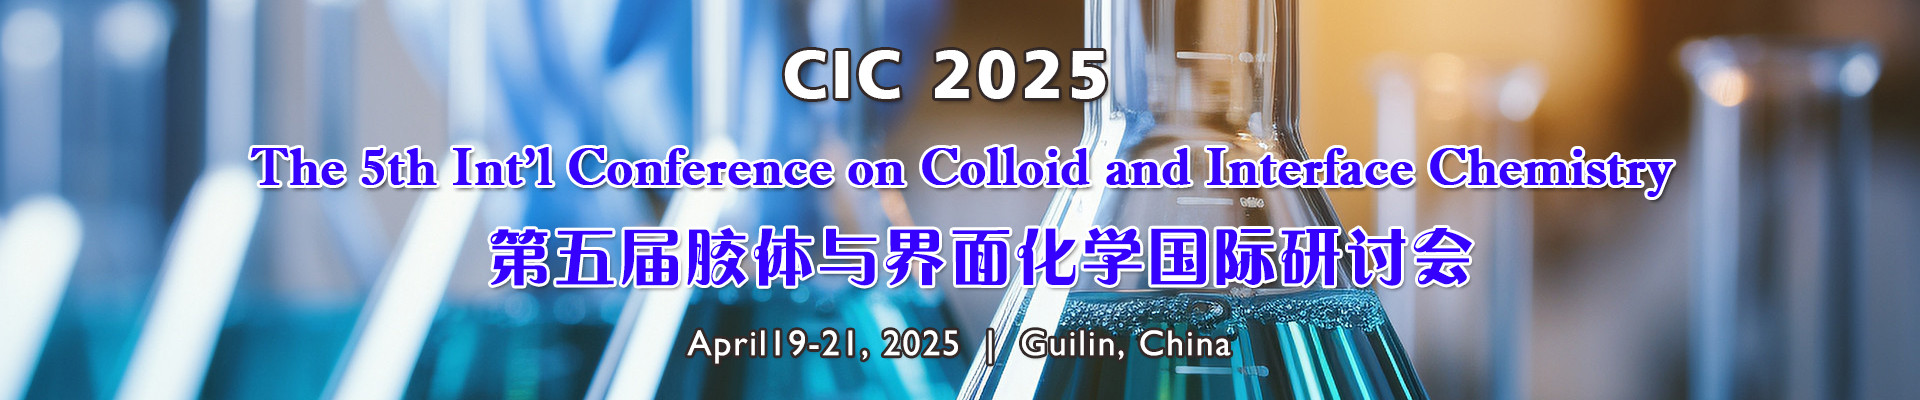 第五届胶体与界面化学国际研讨会会(CIC 2025)